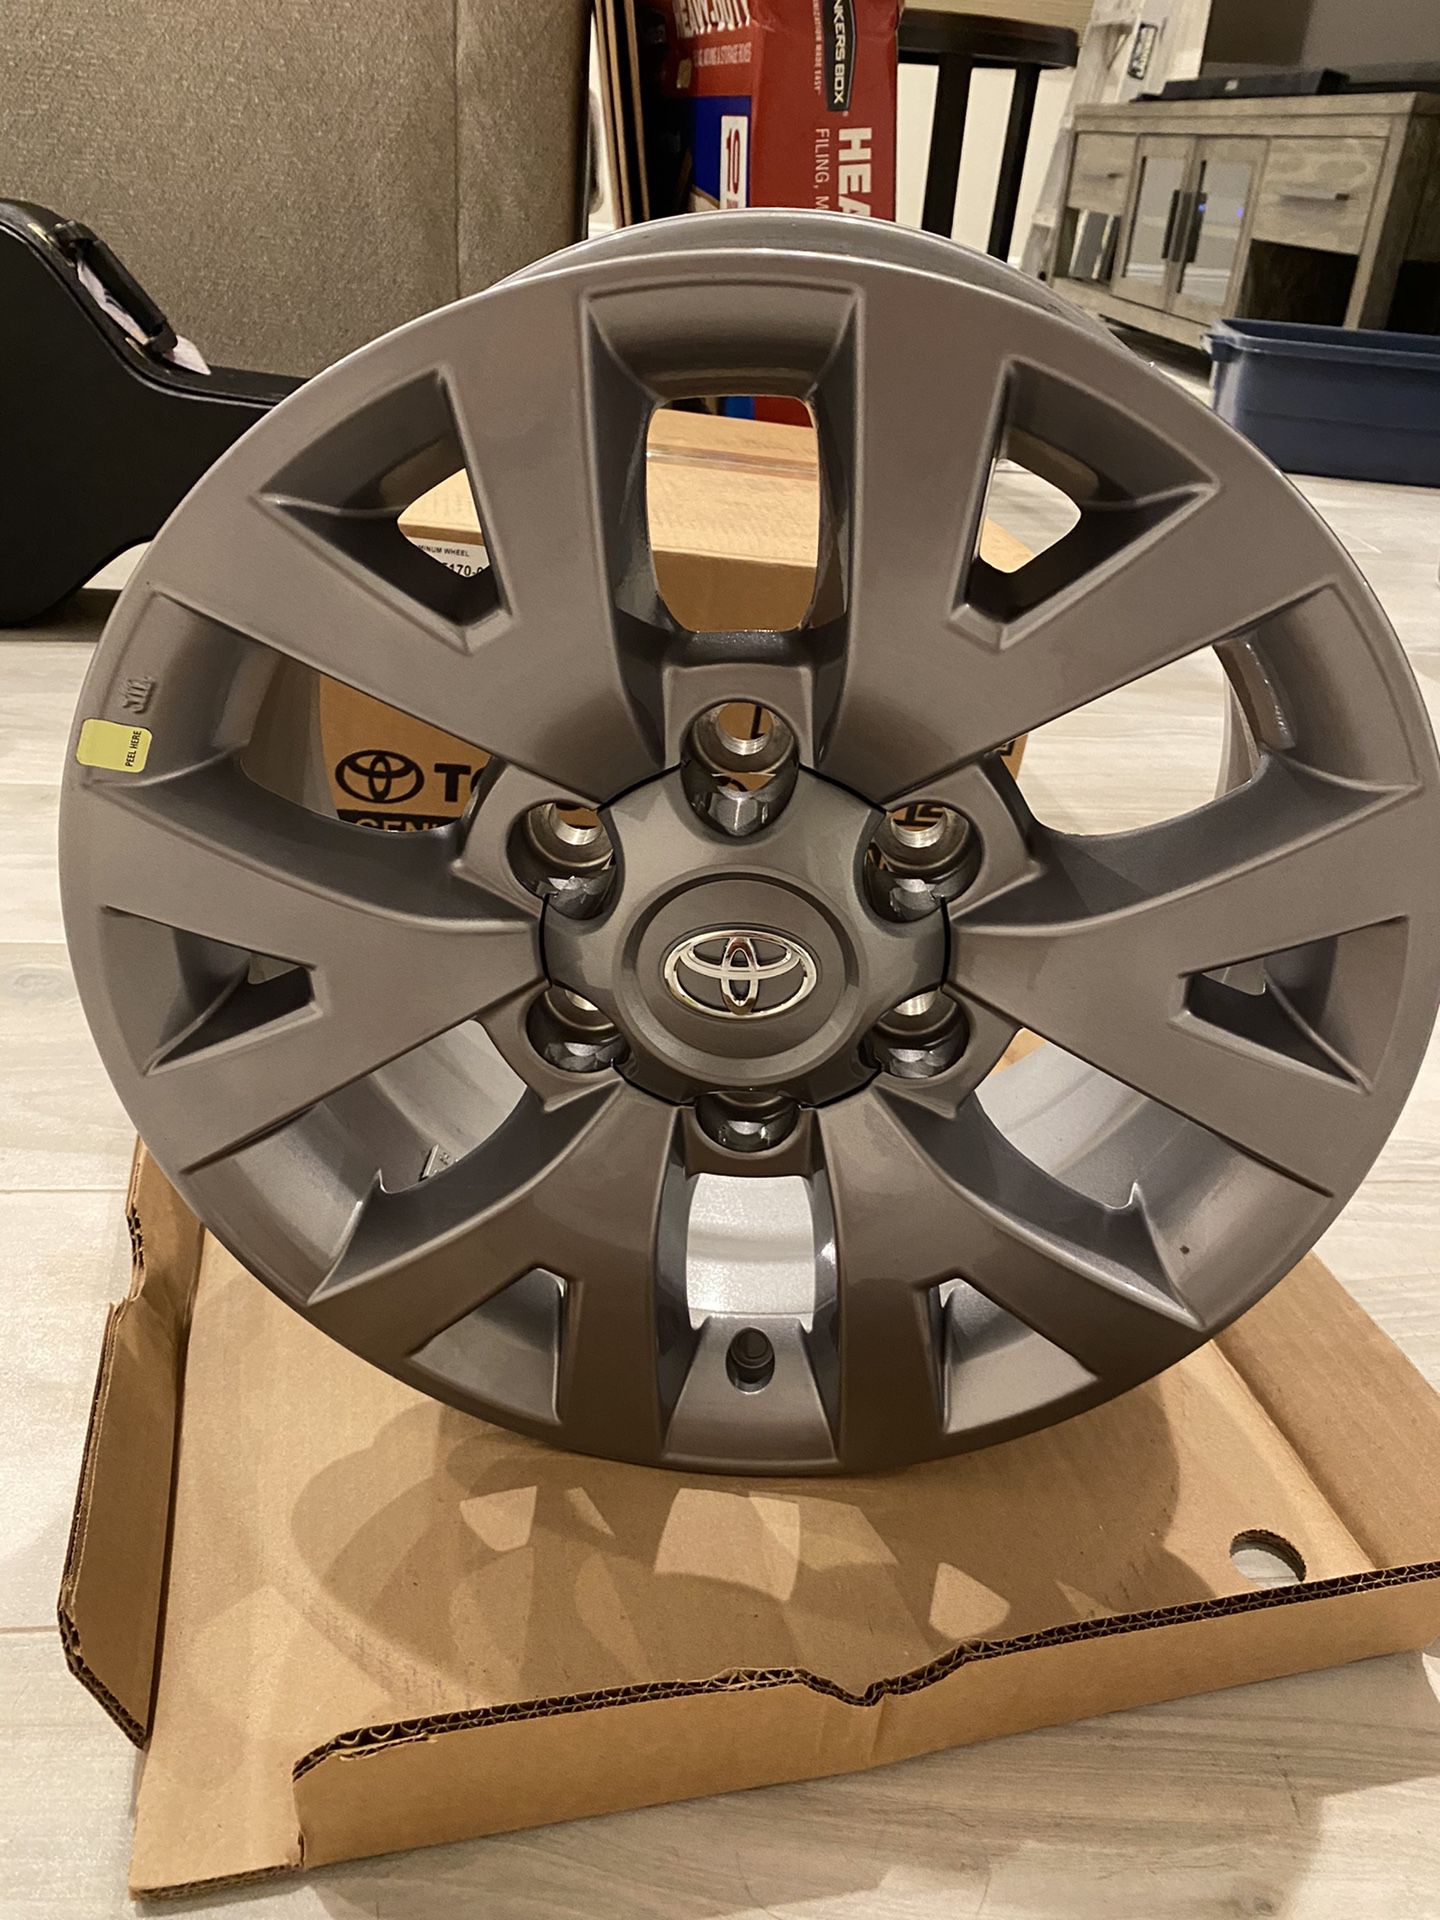 2019 Toyota Tacoma Gray Aluminum Wheel set- New in box